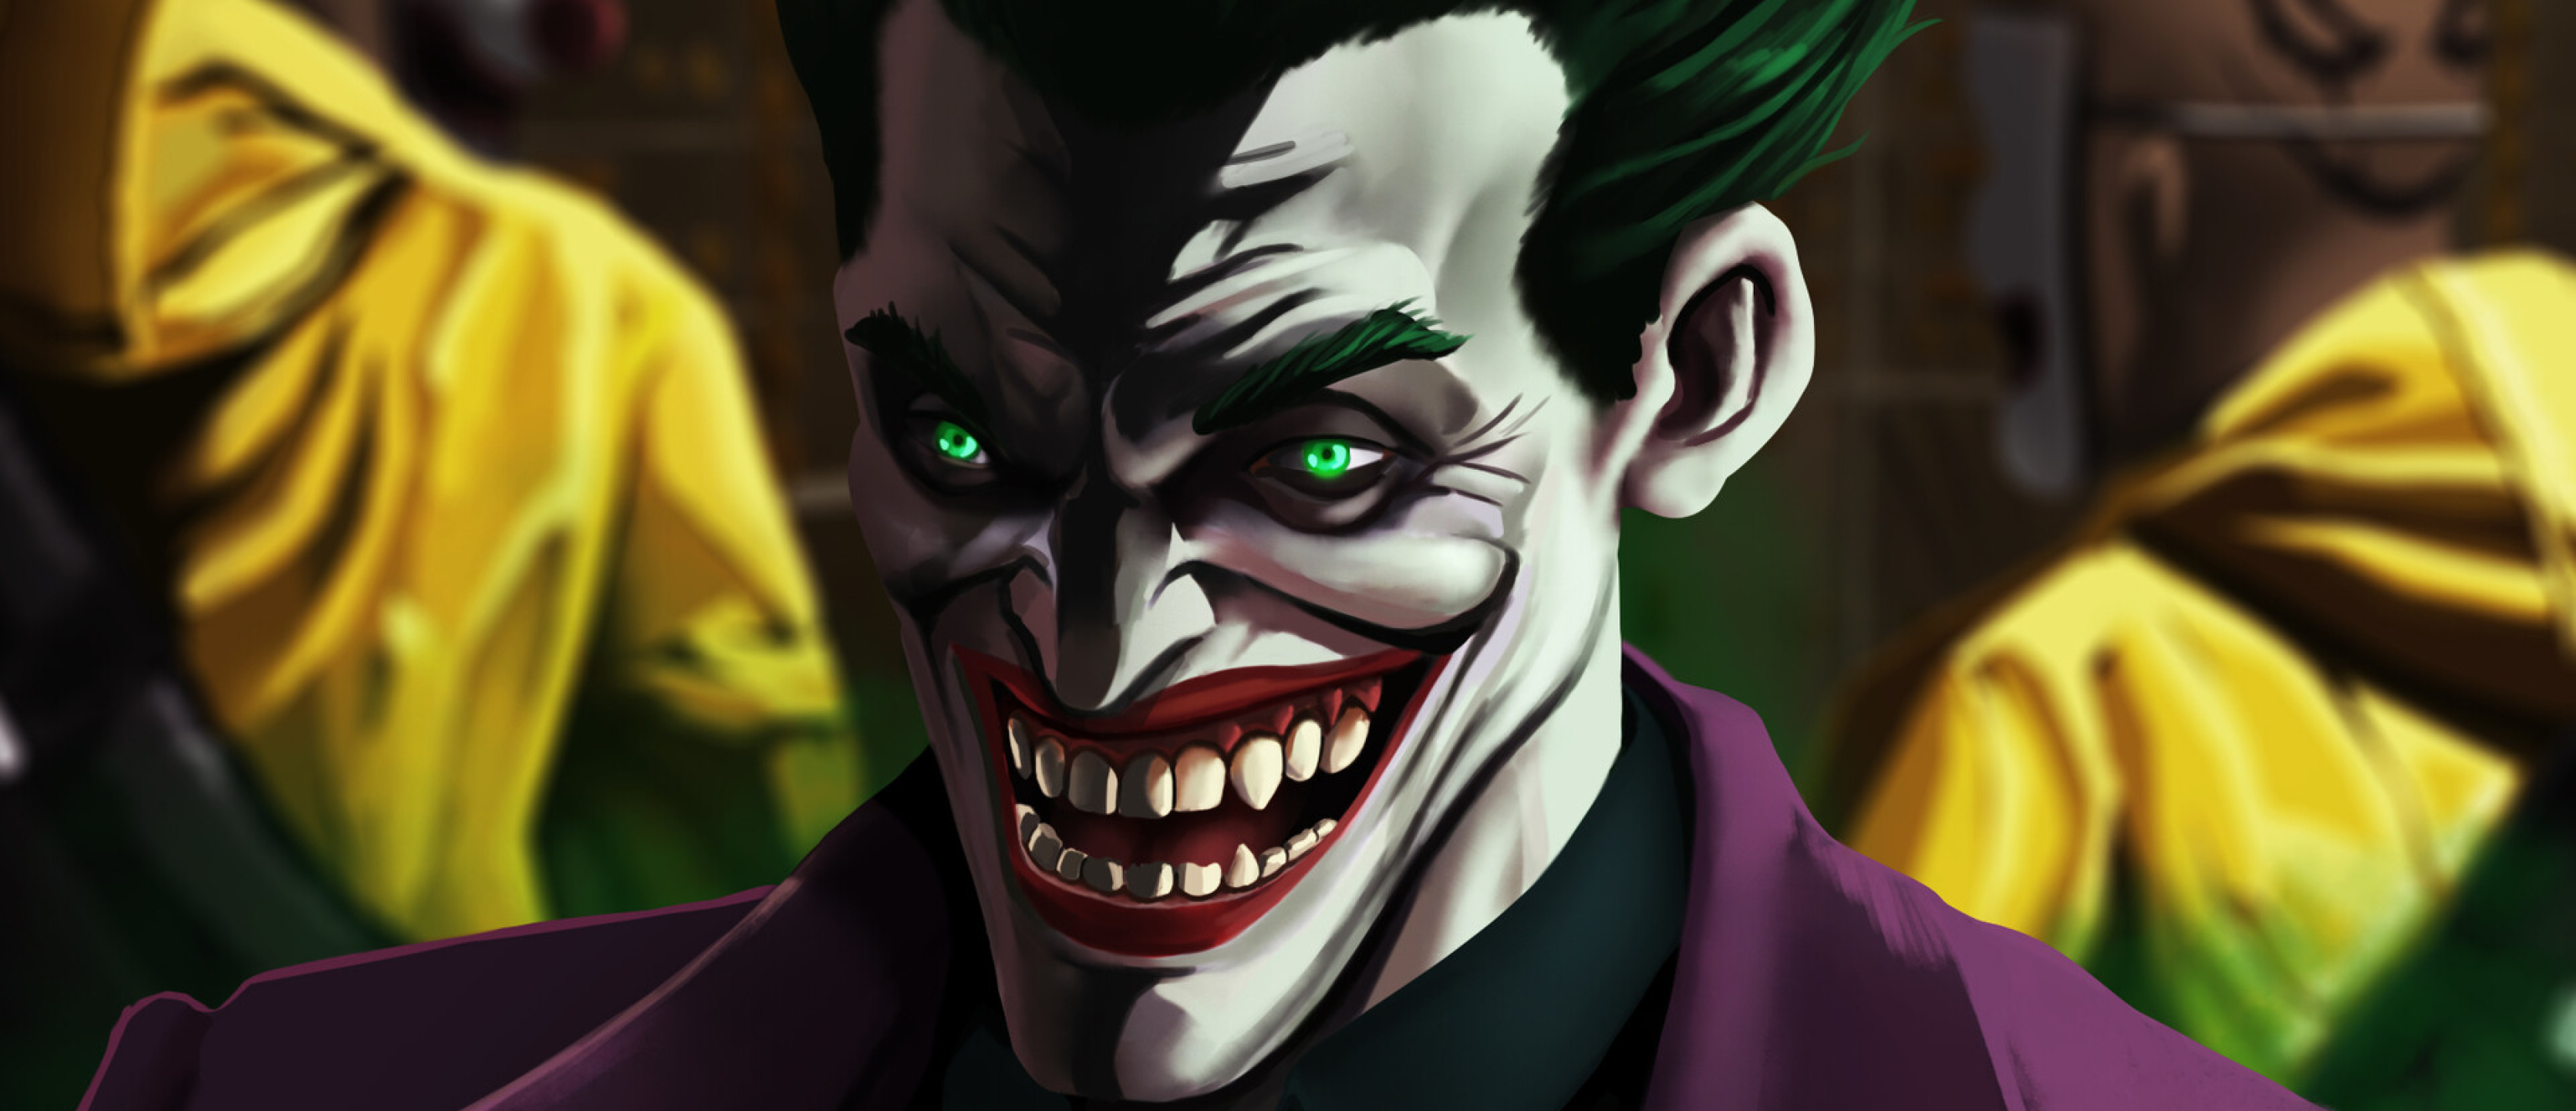 3340x1440 Resolution An Evil Joker Laugh 3340x1440 Resolution Wallpaper ...